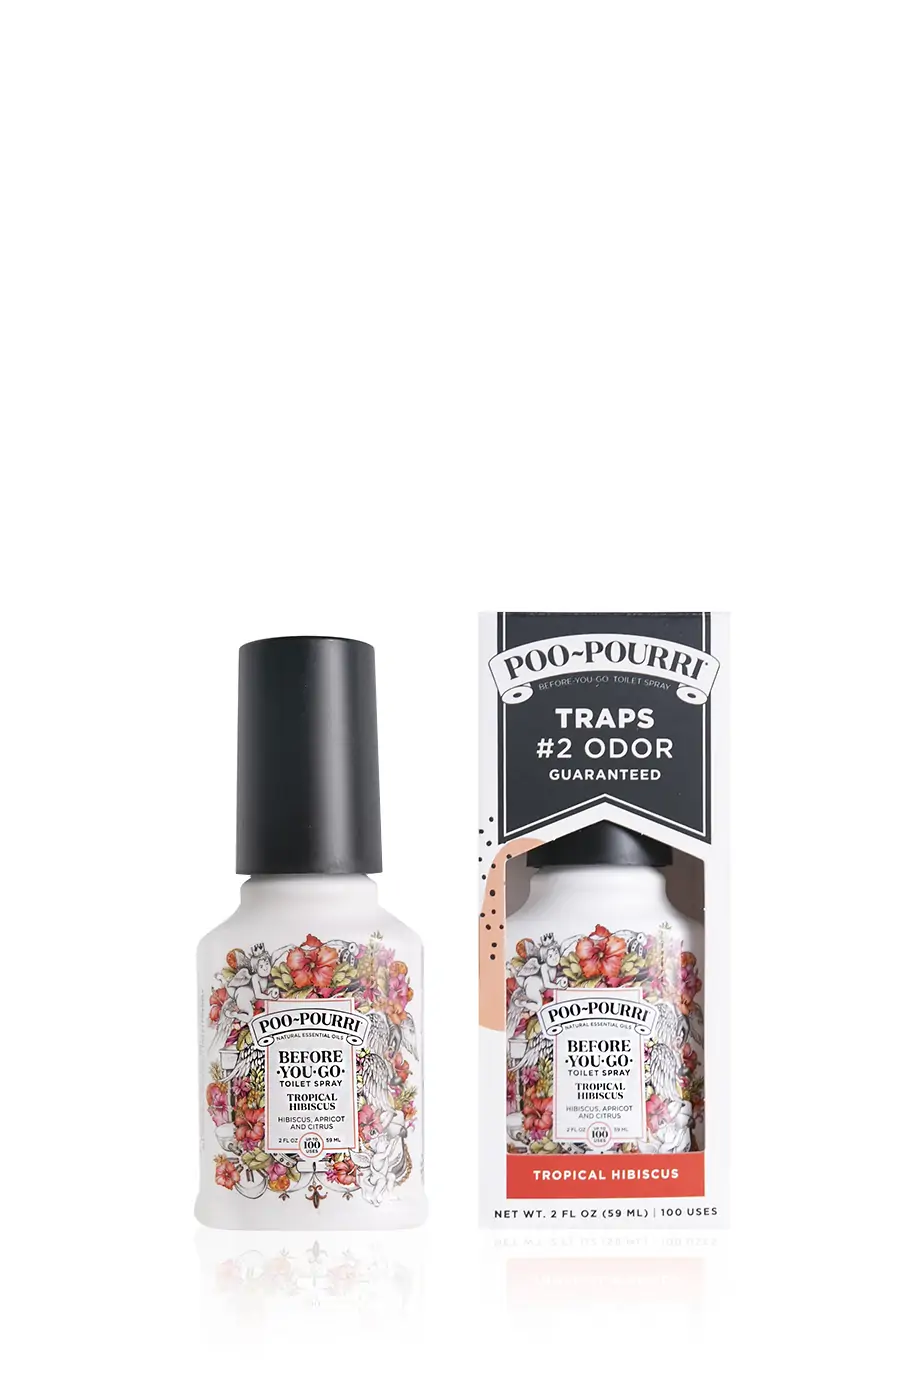 Спрей-ароматизатор Tropical Hibiscus 59 мл (100 нажатий) в интернет-магазине Authentica.love